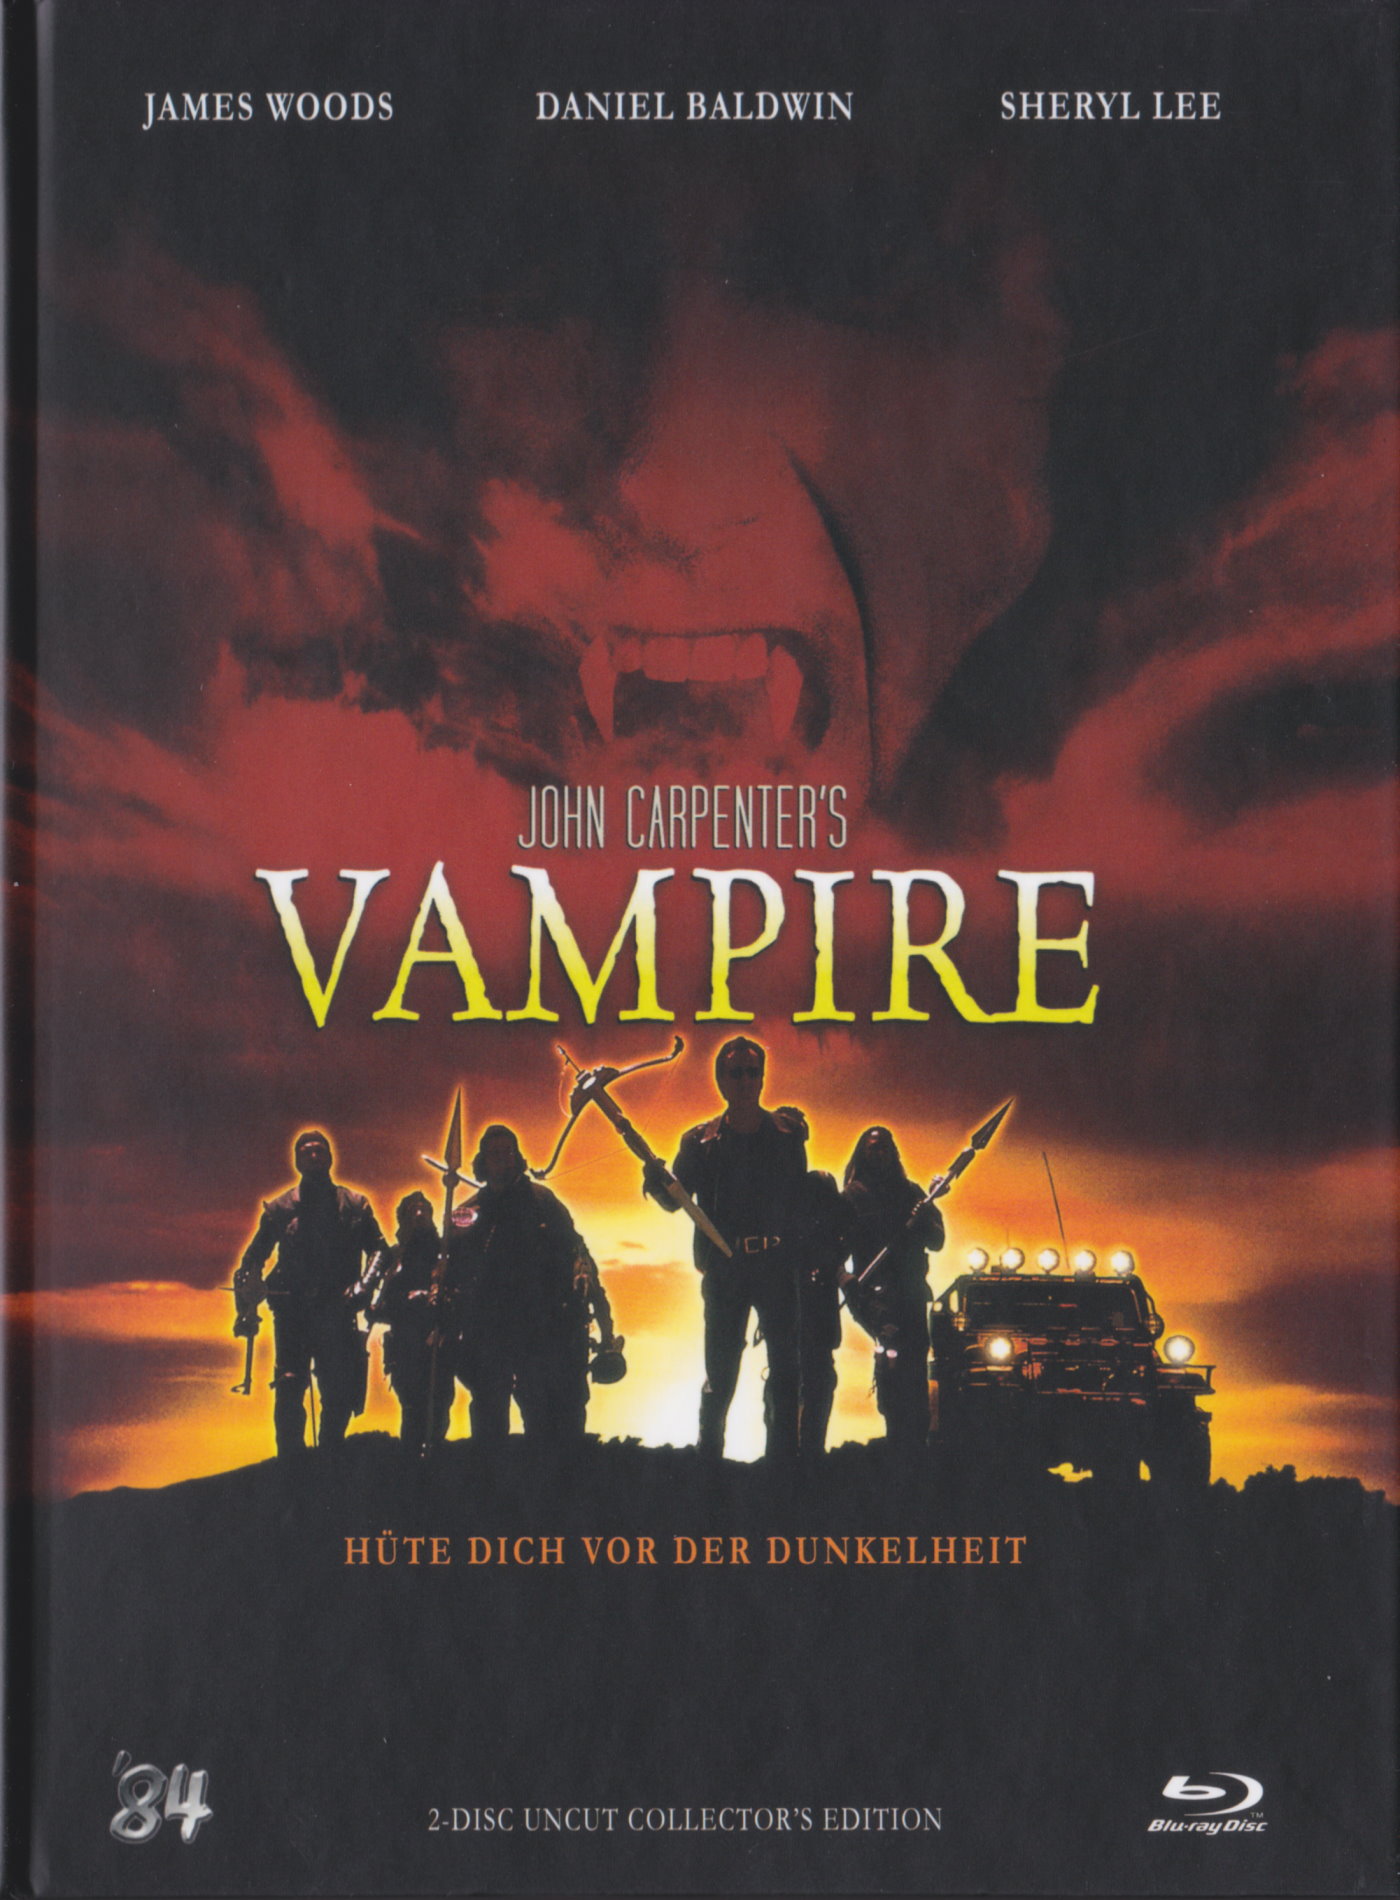 Cover - Vampire.jpg